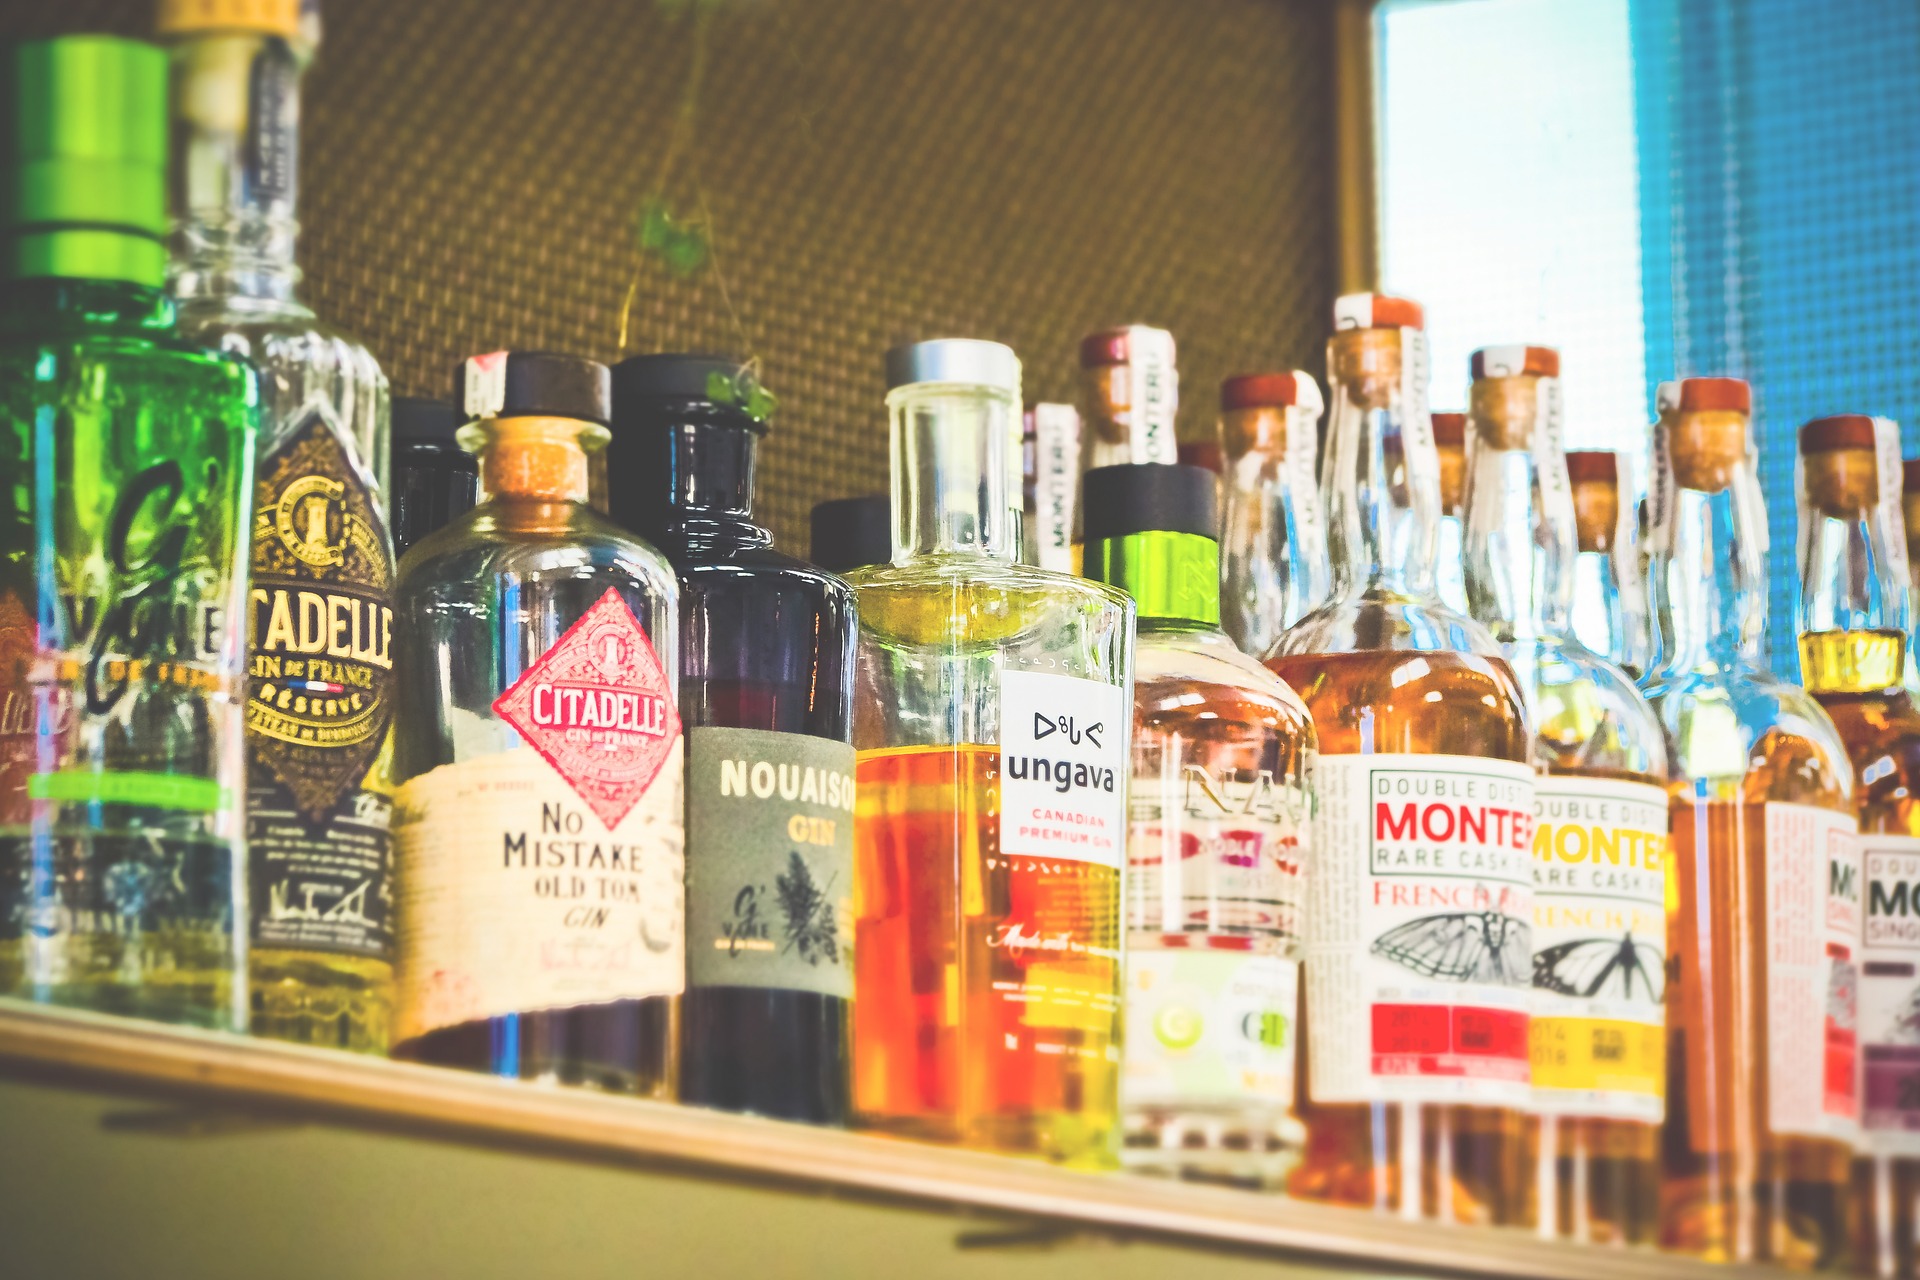 Alcohol bottles on a shelf.